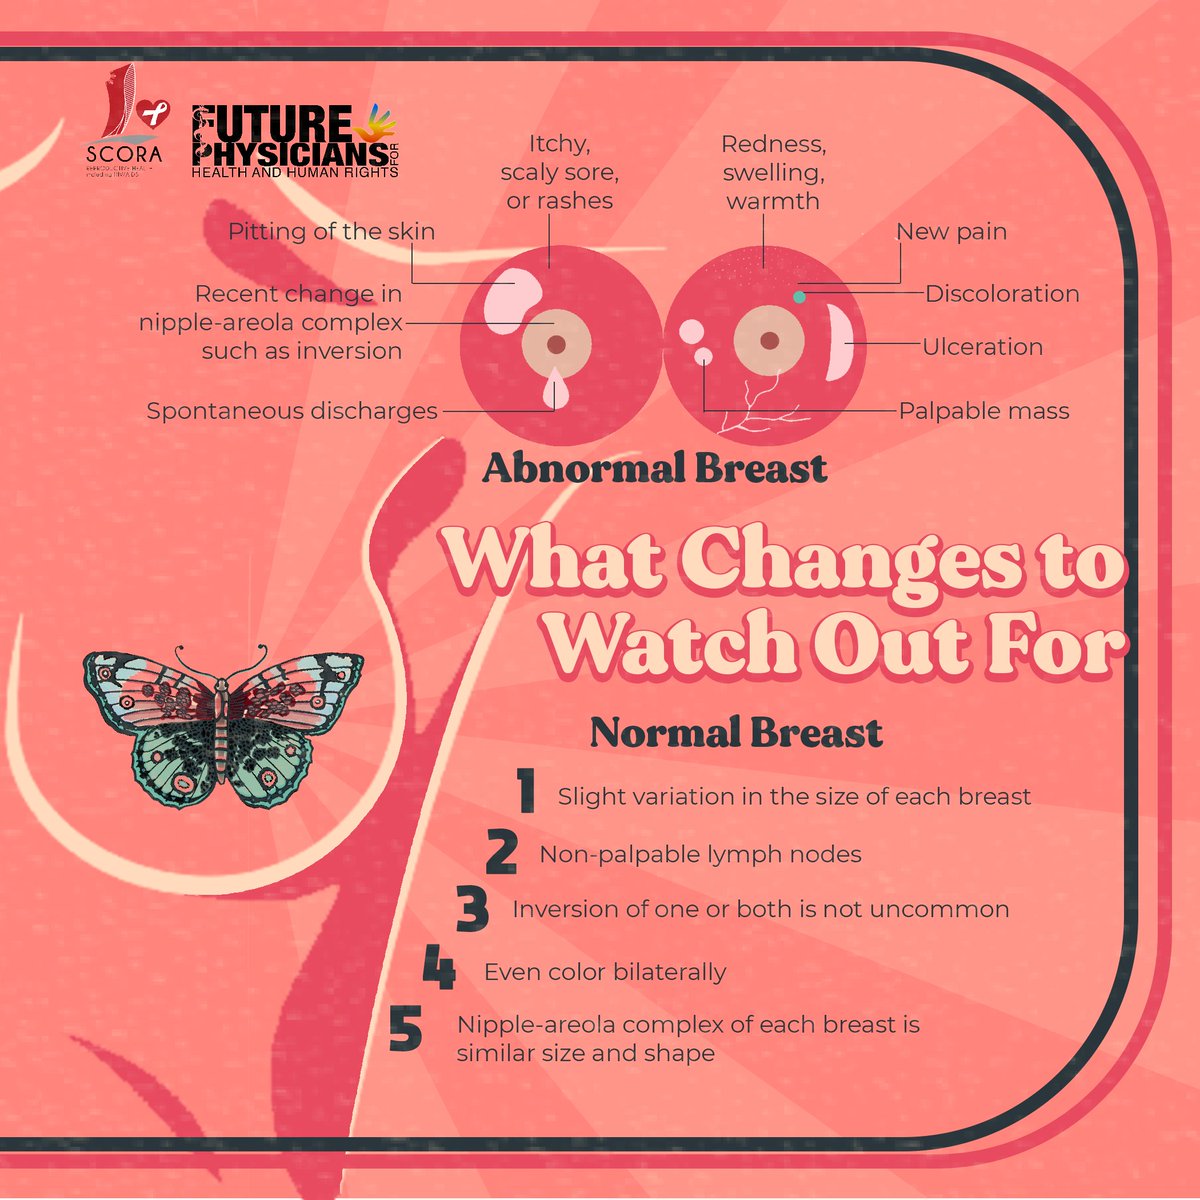 𝗟𝗲𝗮𝗿𝗻 𝗺𝗼𝗿𝗲 𝗯𝘆 𝗿𝗲𝗮𝗱𝗶𝗻𝗴 𝗼𝘂𝗿 𝗳𝗲𝗮𝘁𝘂𝗿𝗲 𝗯𝗲𝗹𝗼𝘄!
𝗧𝗼𝗴𝗲𝘁𝗵𝗲𝗿, 𝗹𝗲𝘁’𝘀 𝗯𝗲 𝗕𝗿𝗲𝗮𝘀𝘁-𝗔𝘄𝗮𝗿𝗲! 💗

#BeBreastAware
#BreastHealth
#BreastCancerAwarenessMonth
#SCORA